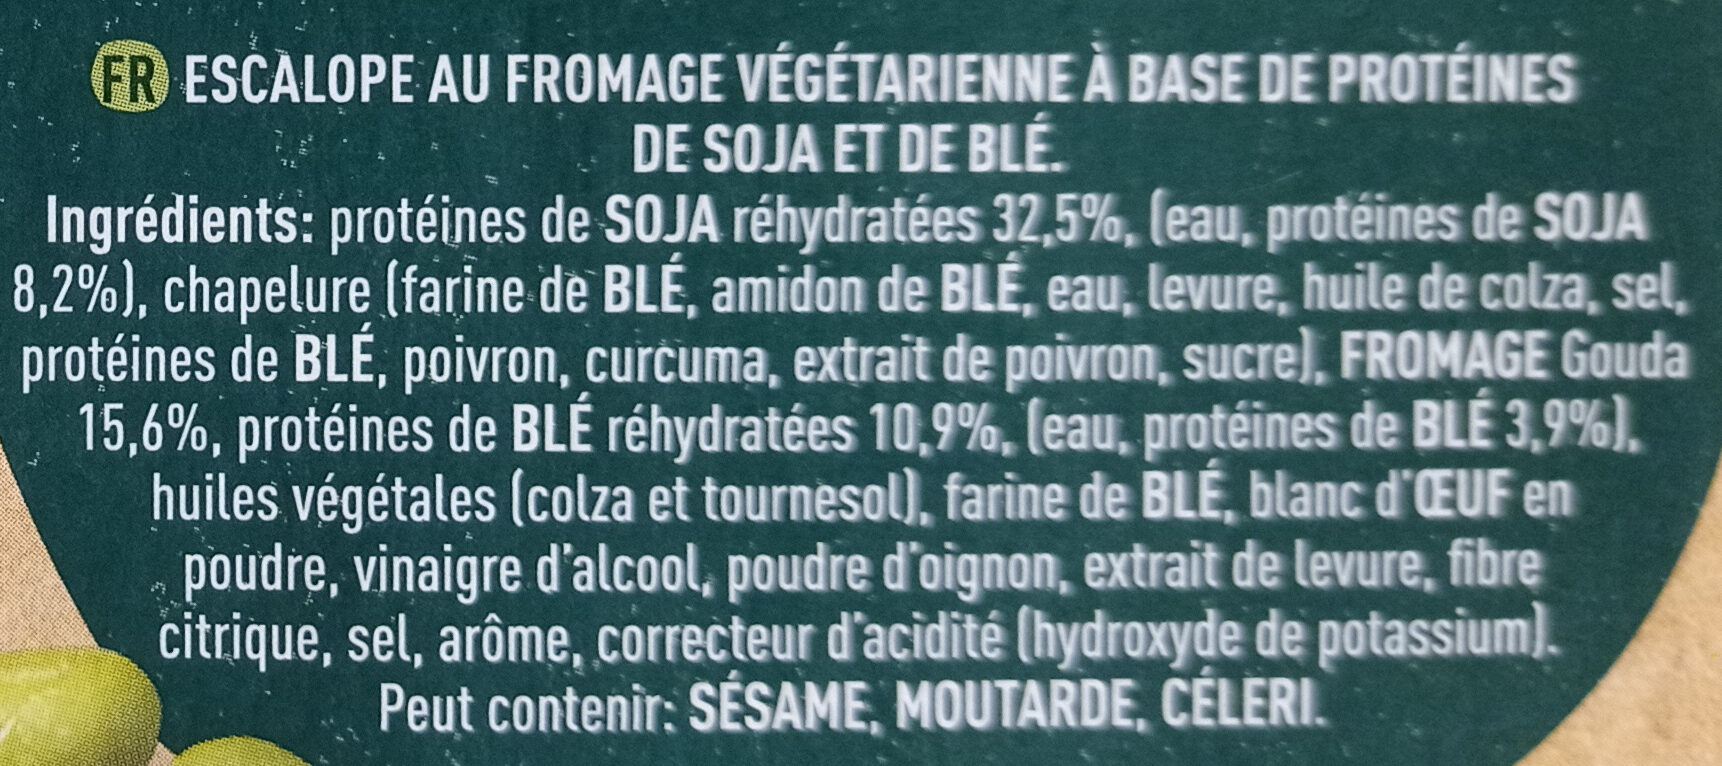 Escalope au fromage - Ingrédients